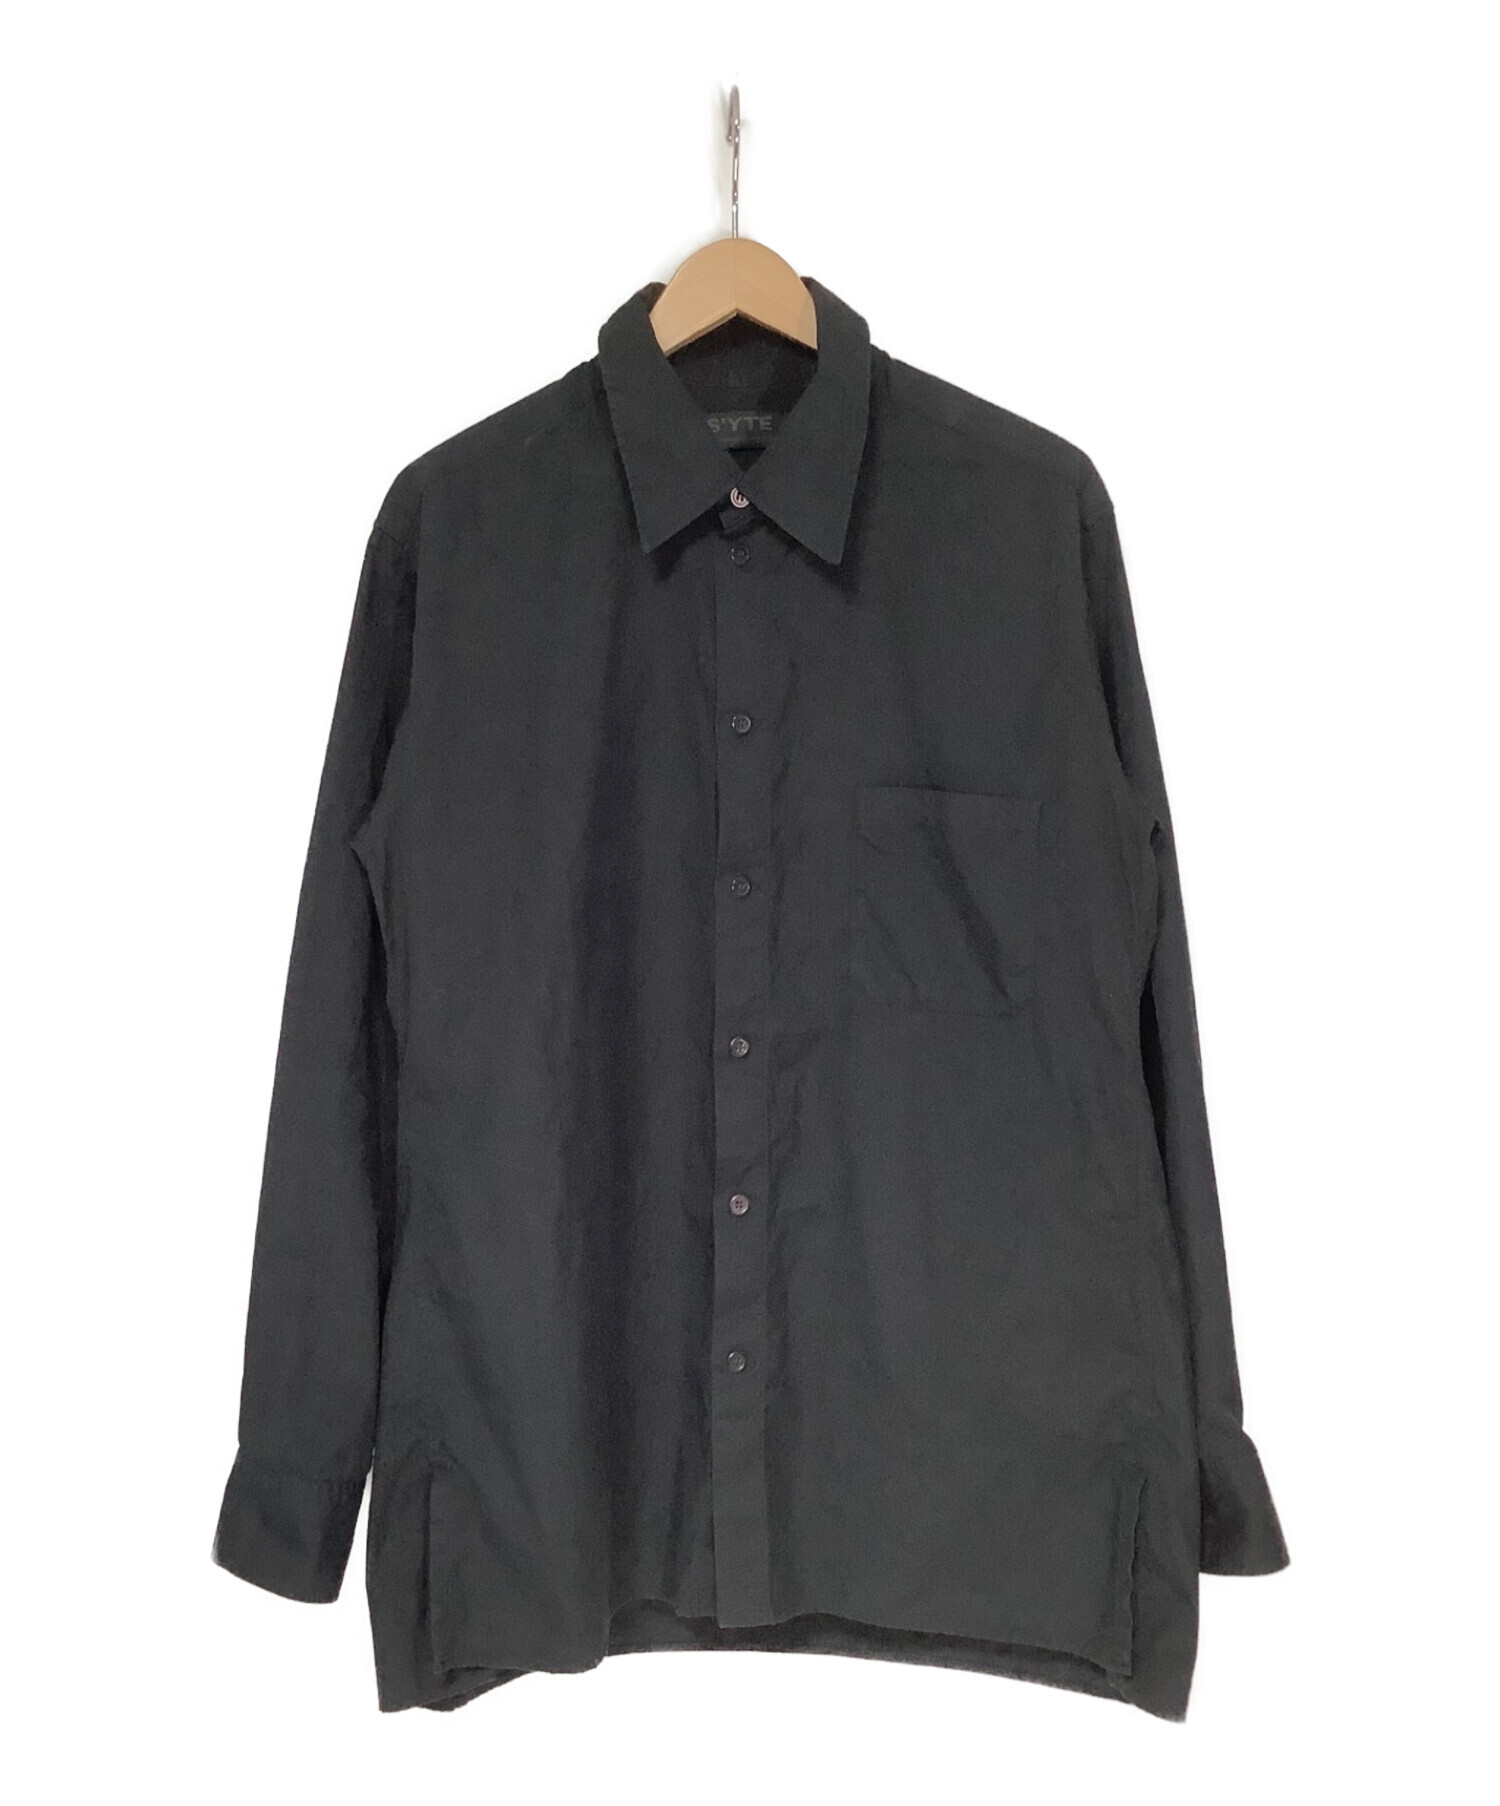 S’YTE YOHJI YAMAMOTO (サイト ヨウジヤマモト) レギュラーブロードシャツ ブラック サイズ:3